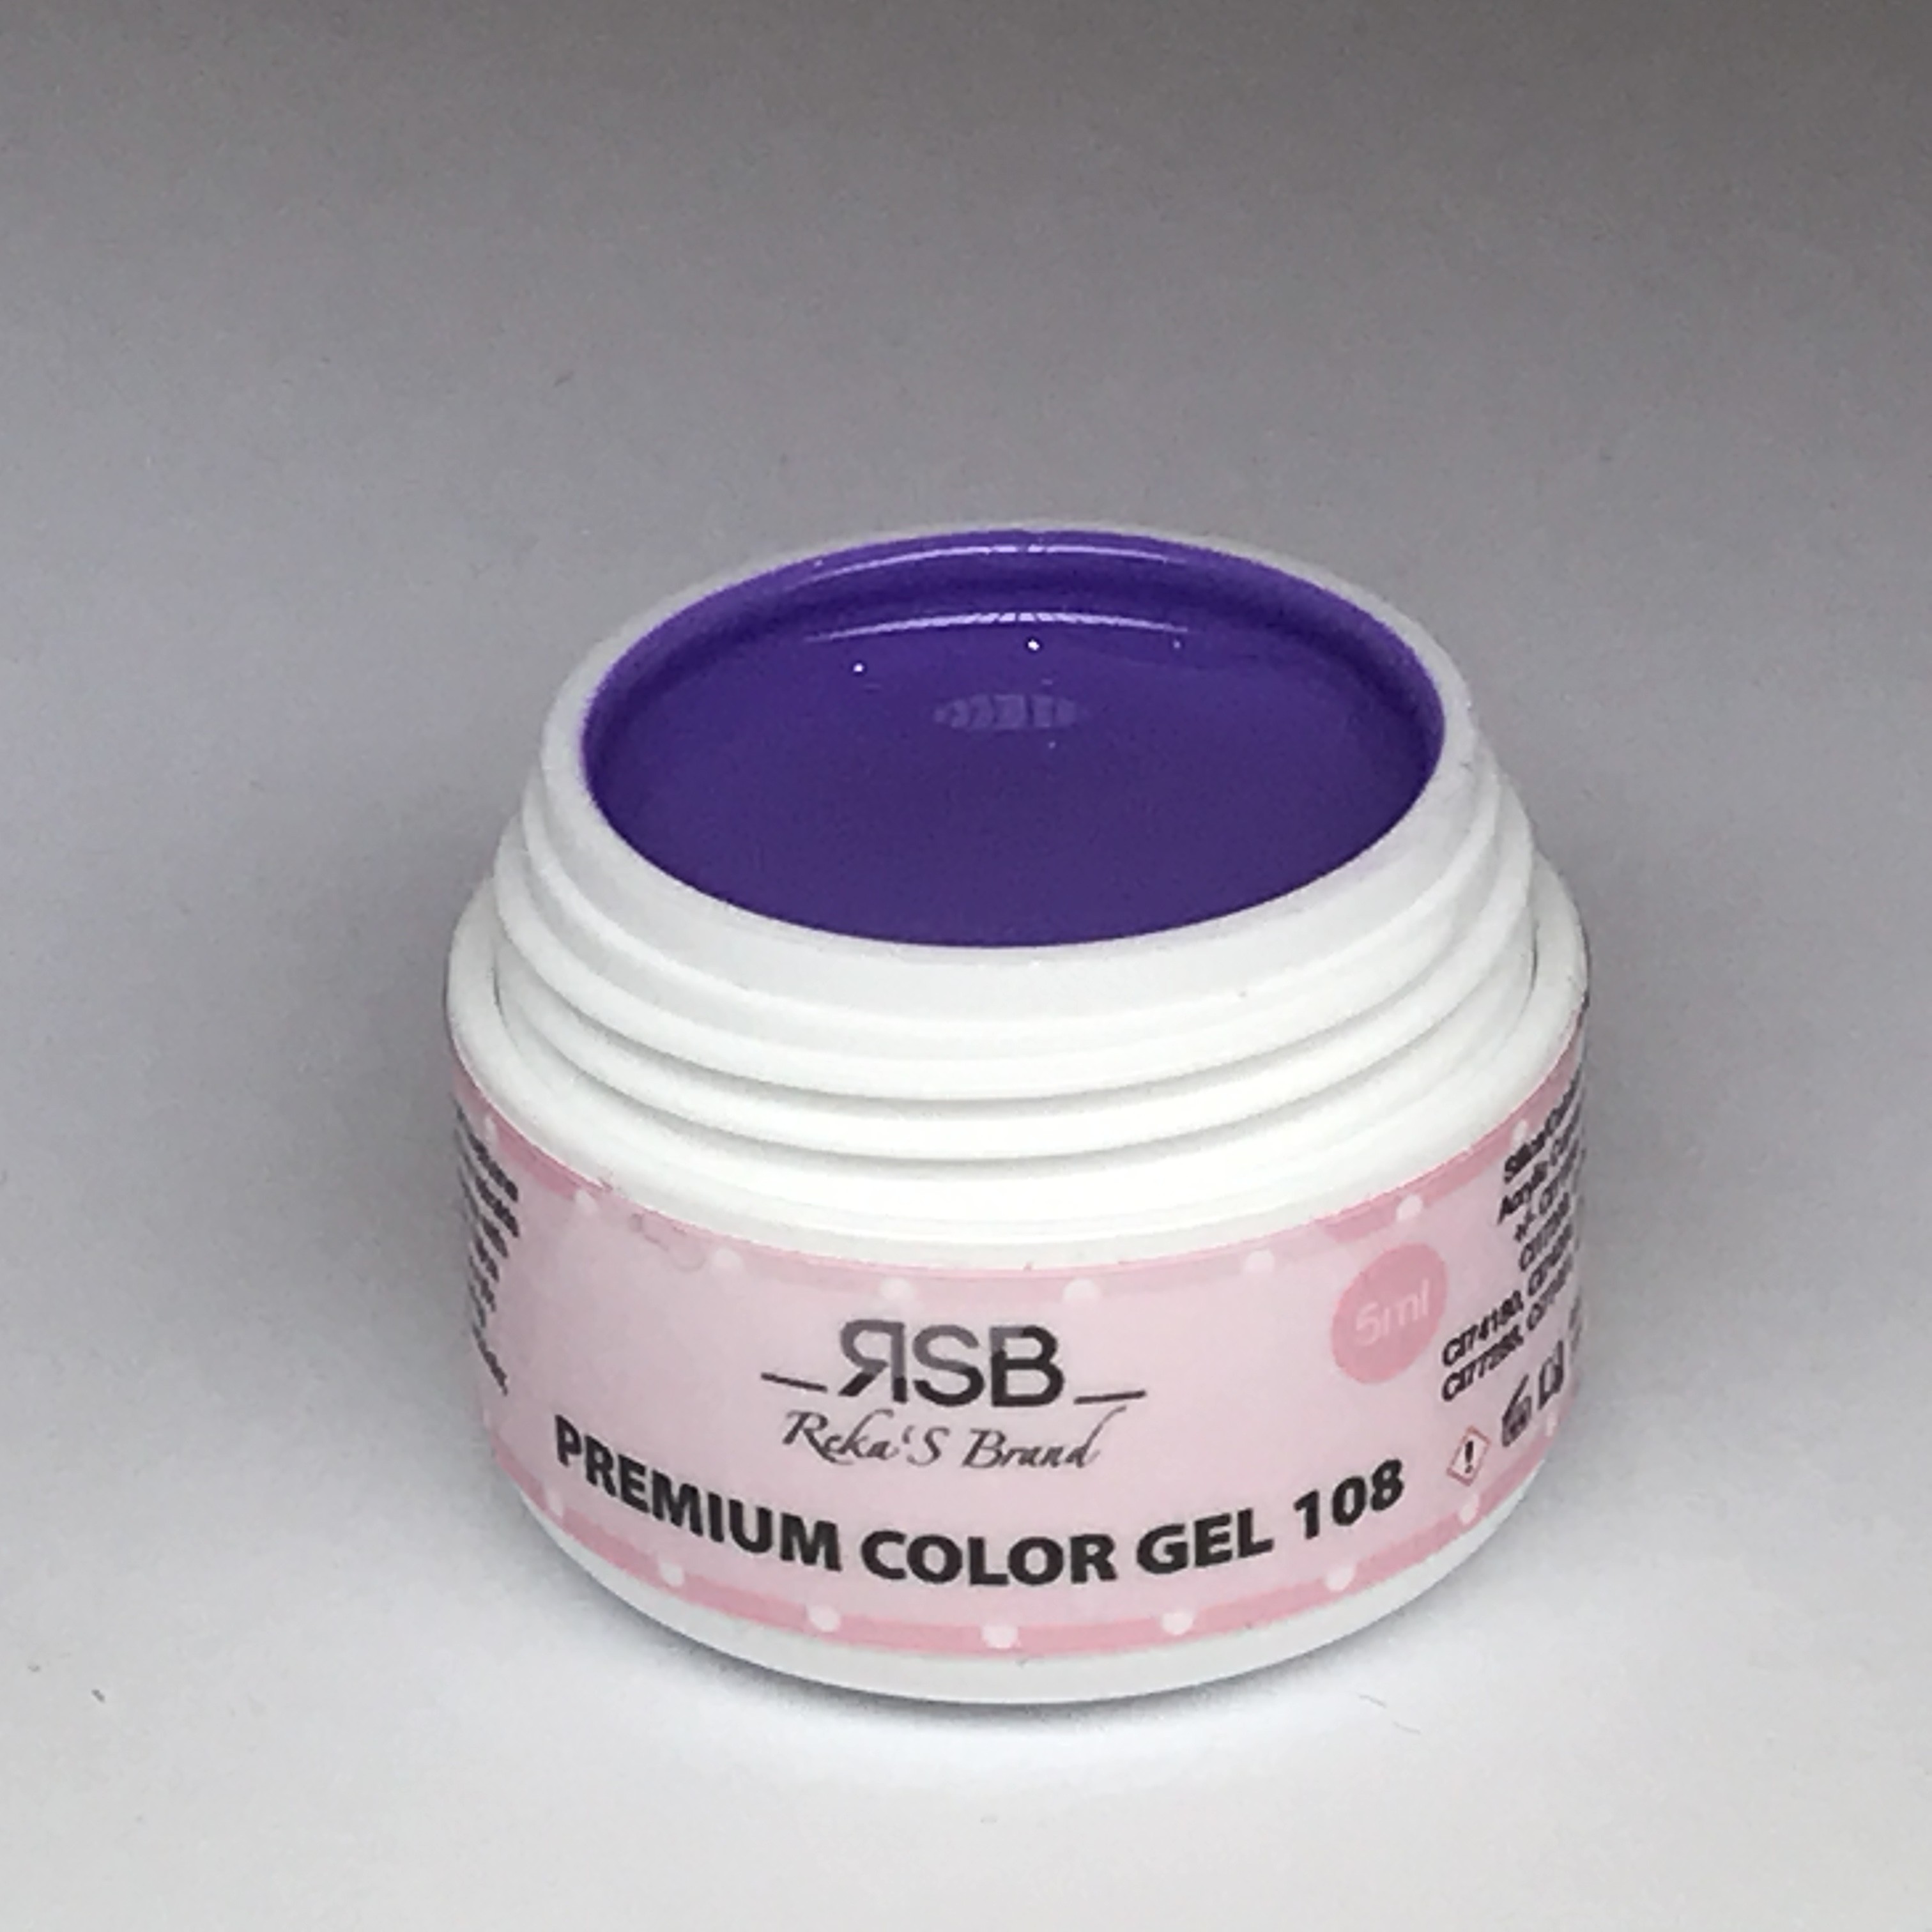 Premium Color Gel 108